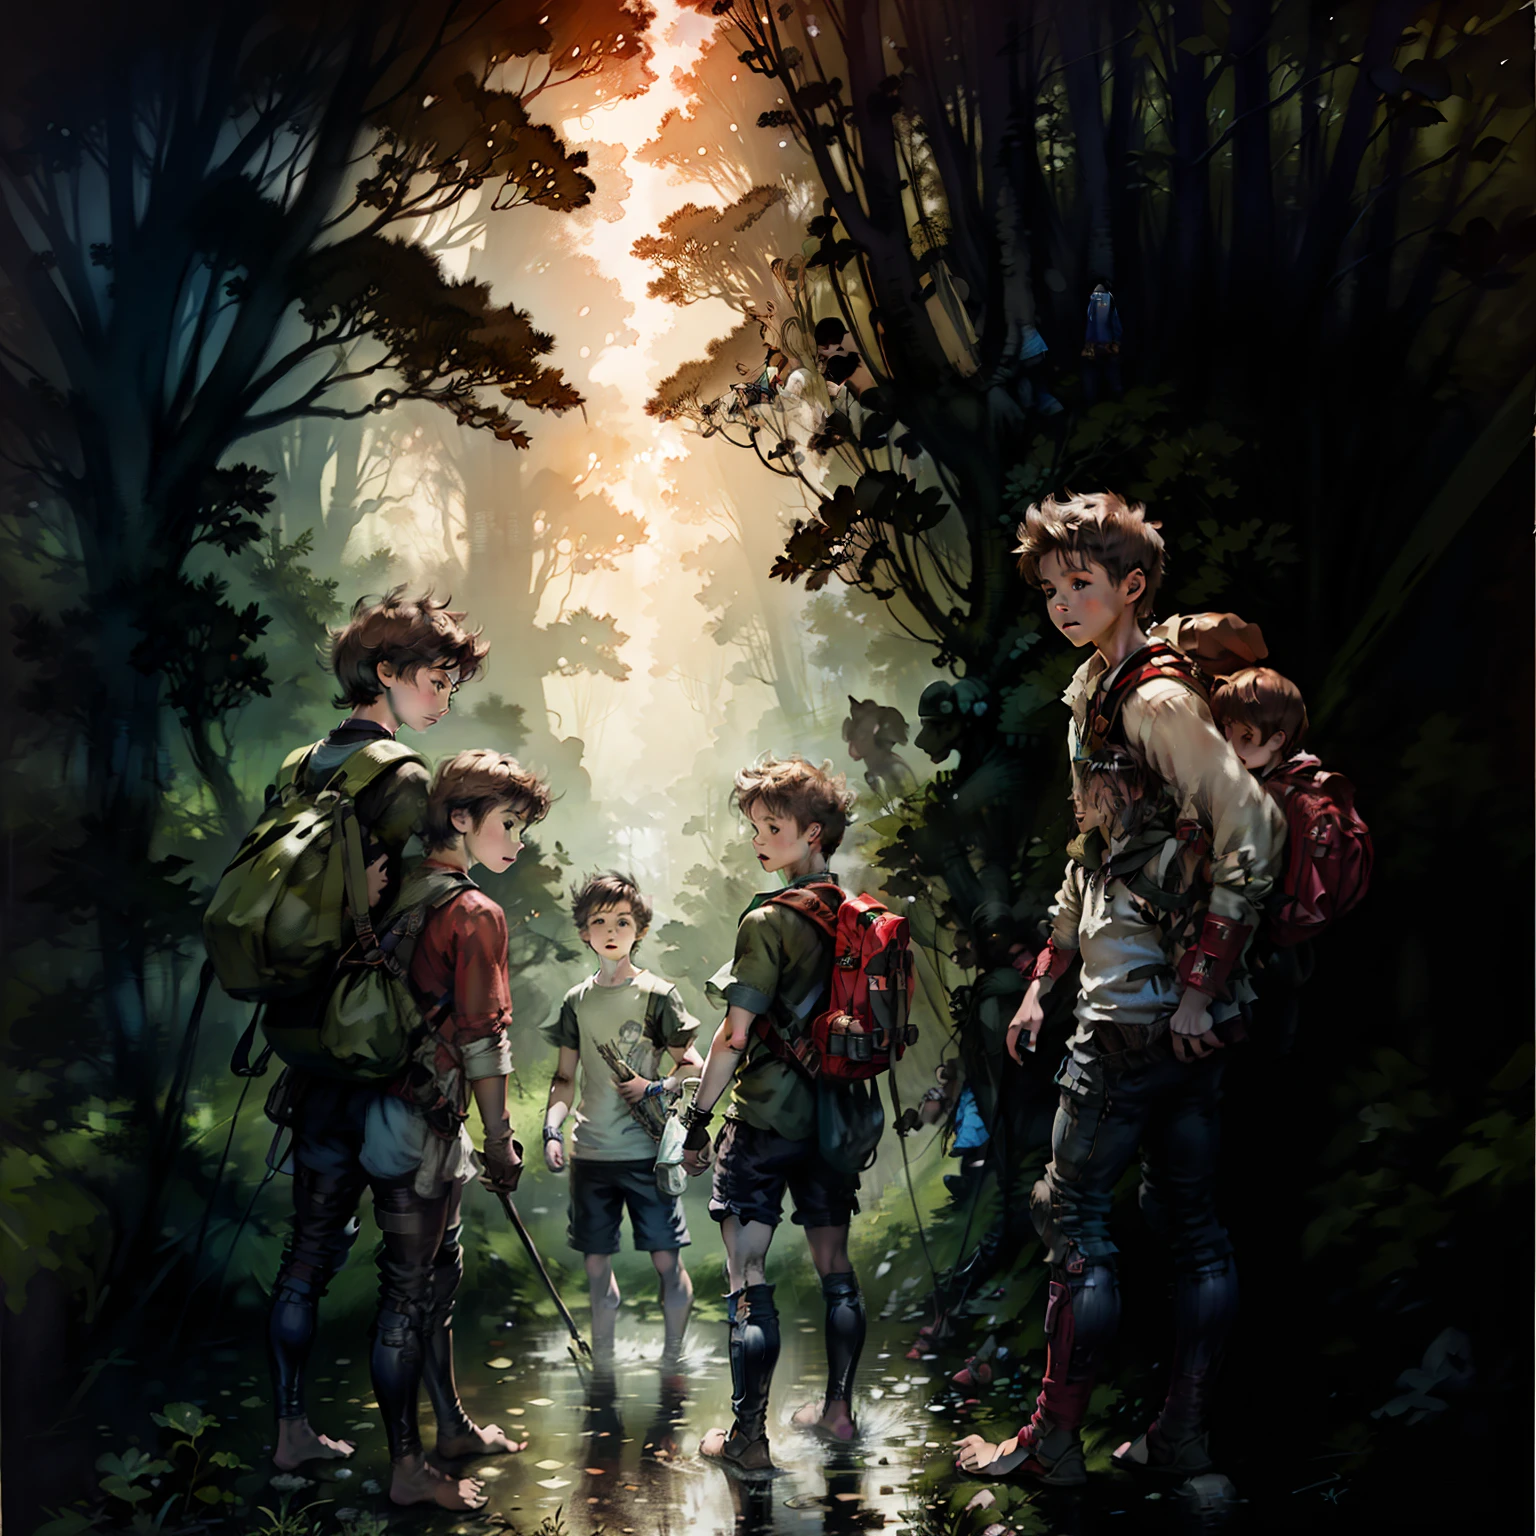 兩根黑髮, 11歲男孩陪伴三個孩子進入充滿溪流和障礙物的陌生森林, 三個孩子穿著舊衣服，赤著腳，兩個11歲的男孩背著背包, 非常詳細的圖像, 背面图像